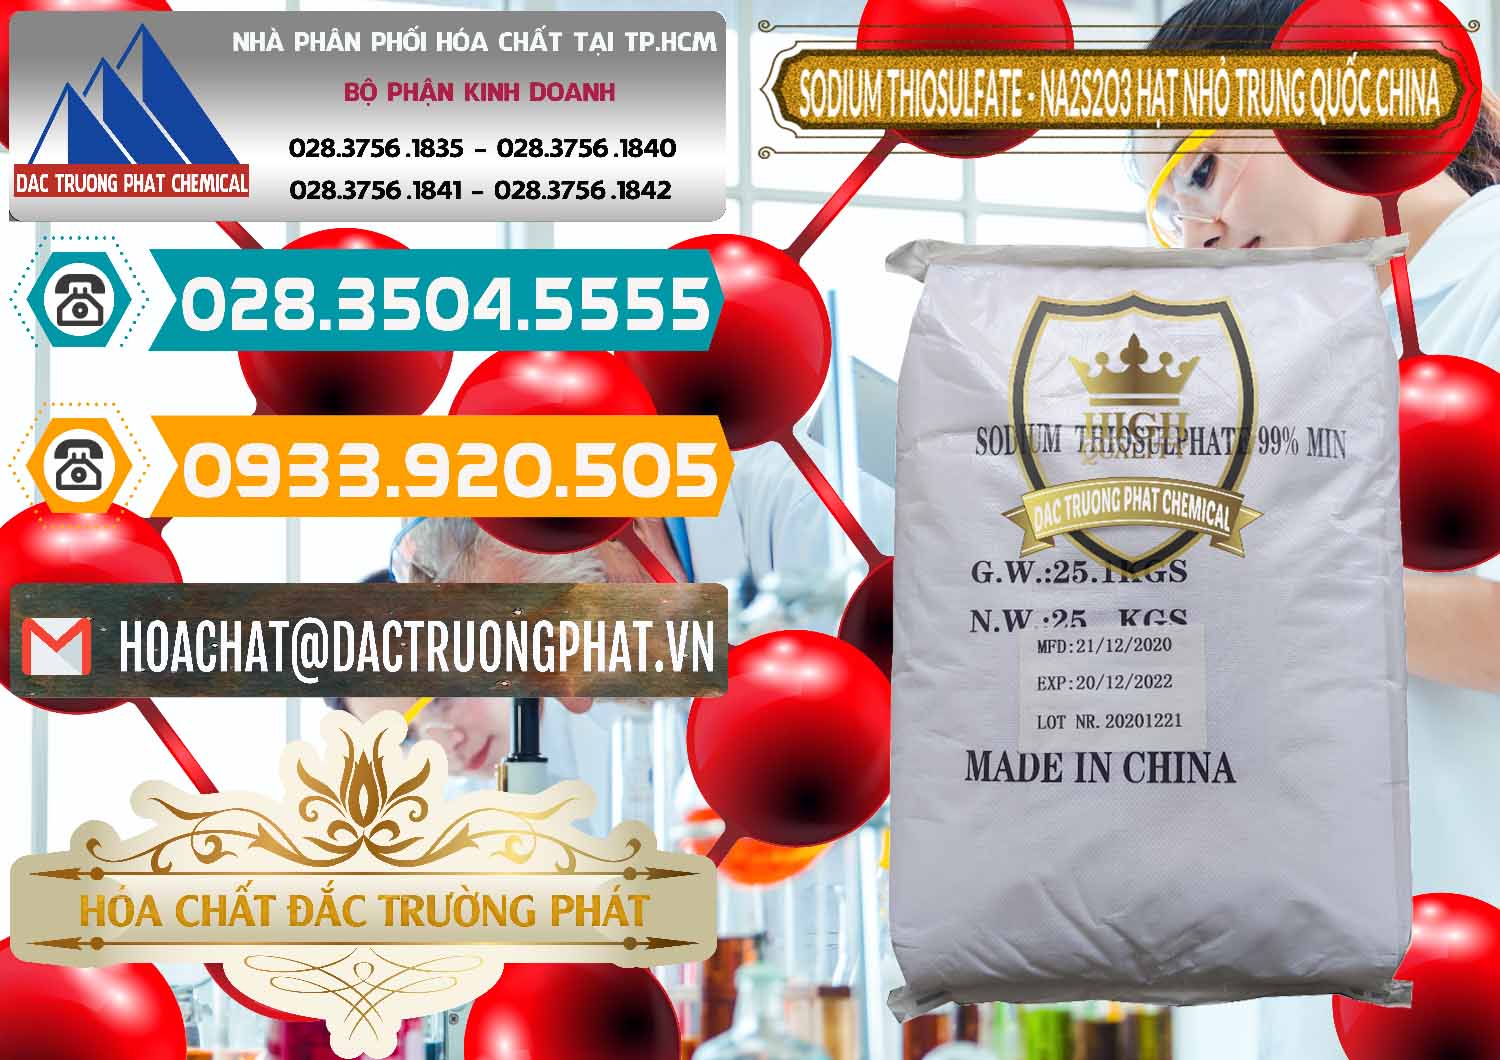 Cty chuyên phân phối & bán Sodium Thiosulfate - NA2S2O3 Hạt Nhỏ Trung Quốc China - 0204 - Nhà nhập khẩu _ phân phối hóa chất tại TP.HCM - congtyhoachat.vn